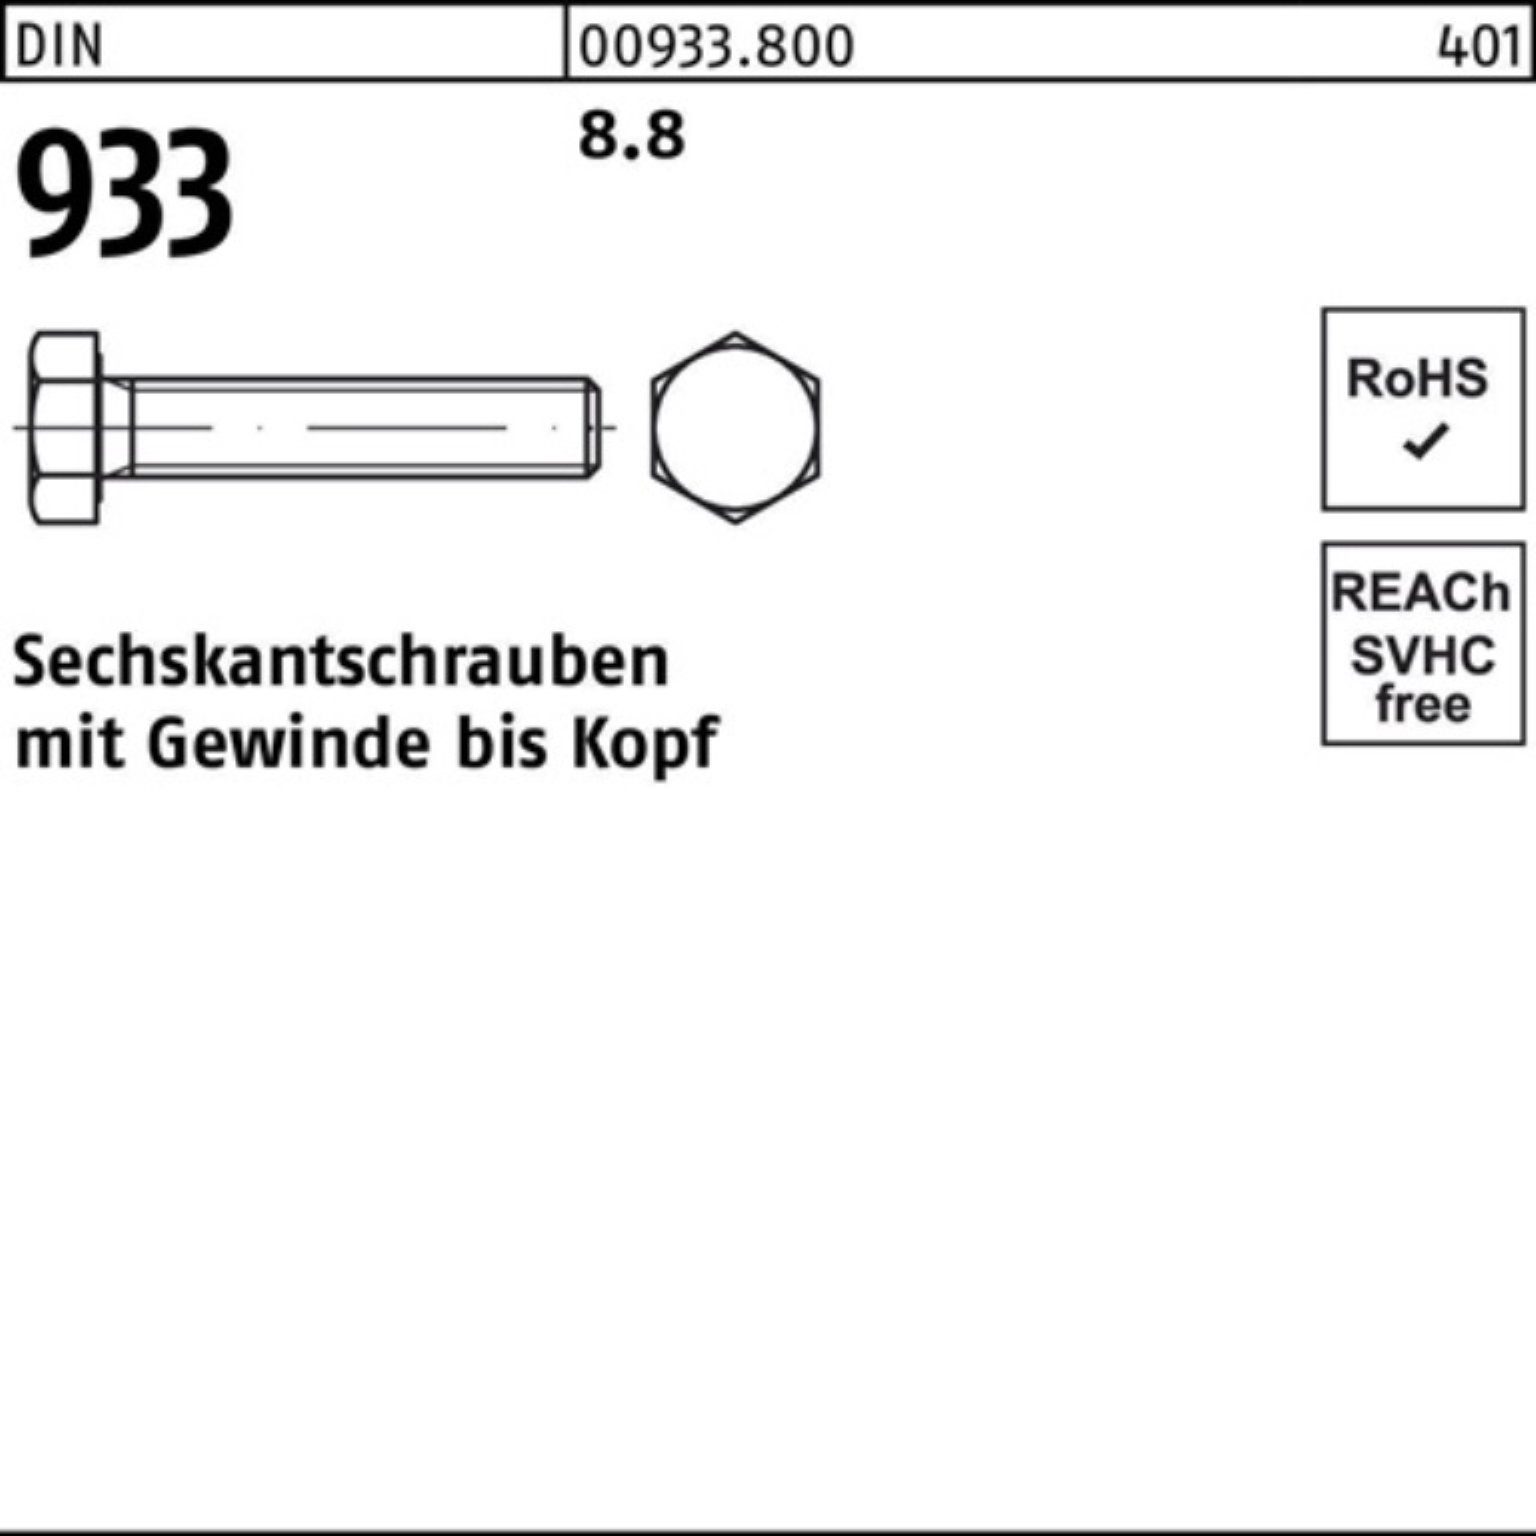 VG Pack Reyher Sechskantschraube 933 100 M48x 933 Sechskantschraube Stück DIN 100er 8.8 1 DIN